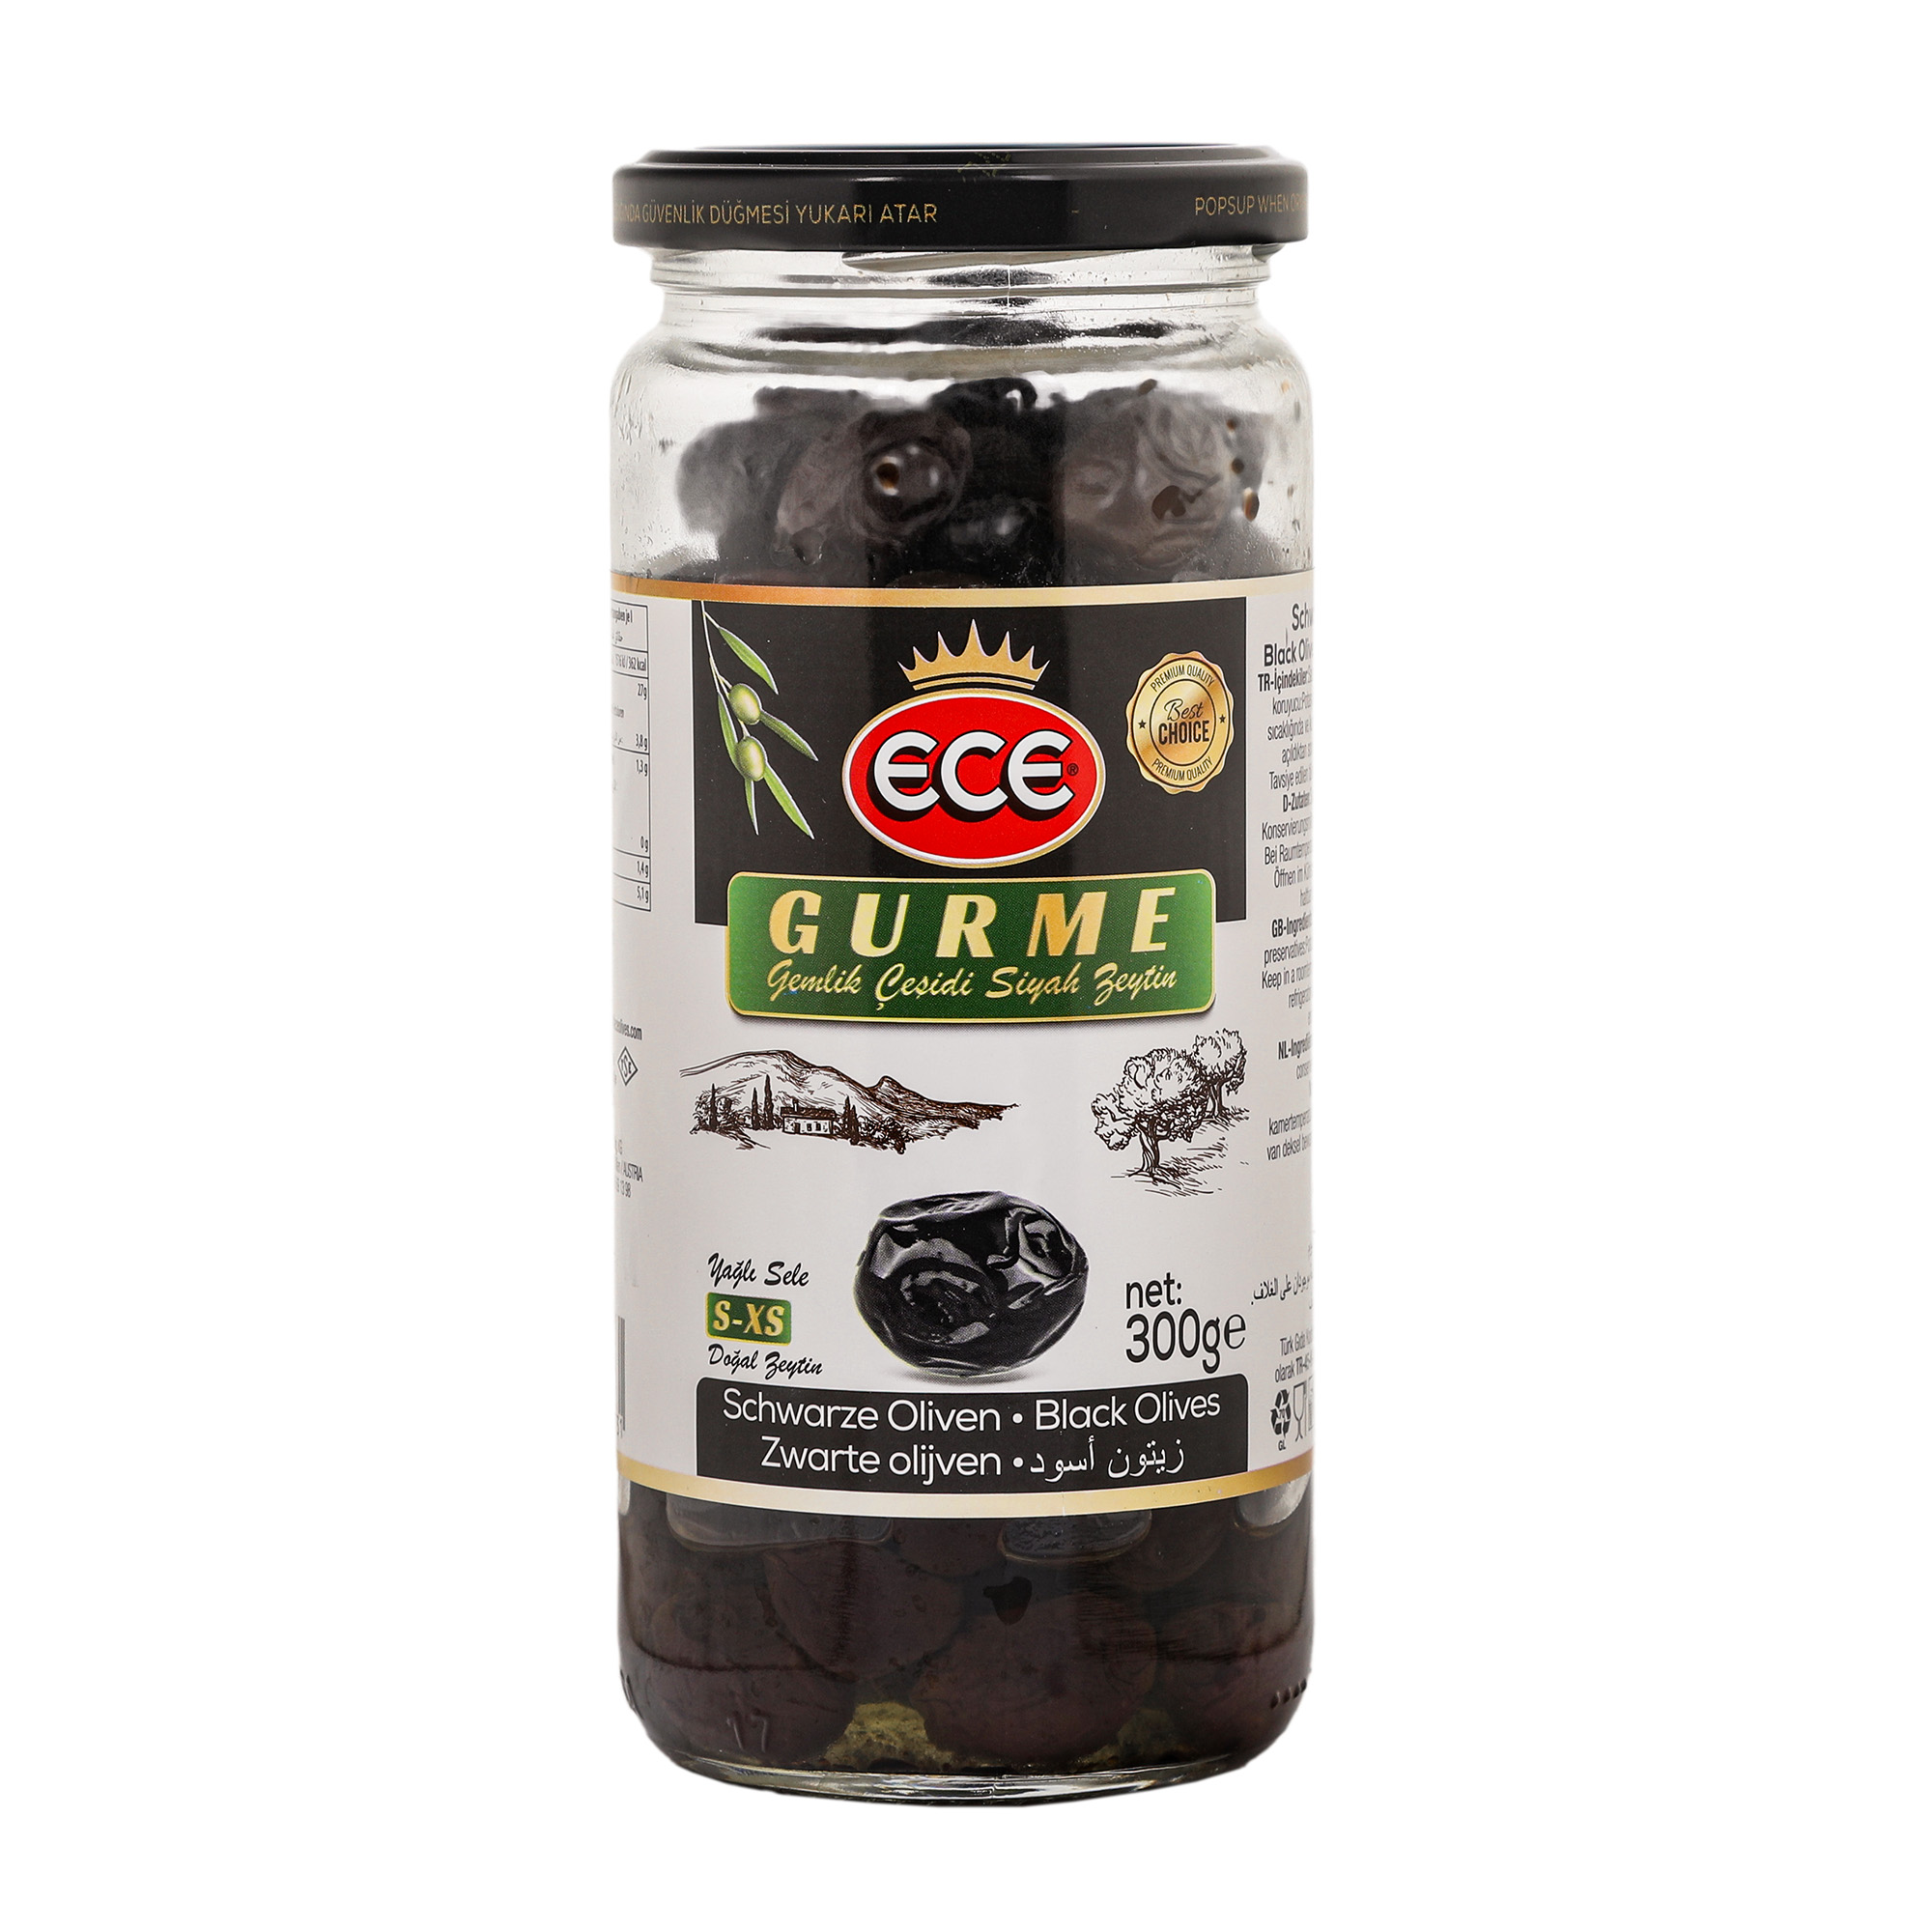 Оливки черные Ece Gurme в масле с косточкой, 300 г